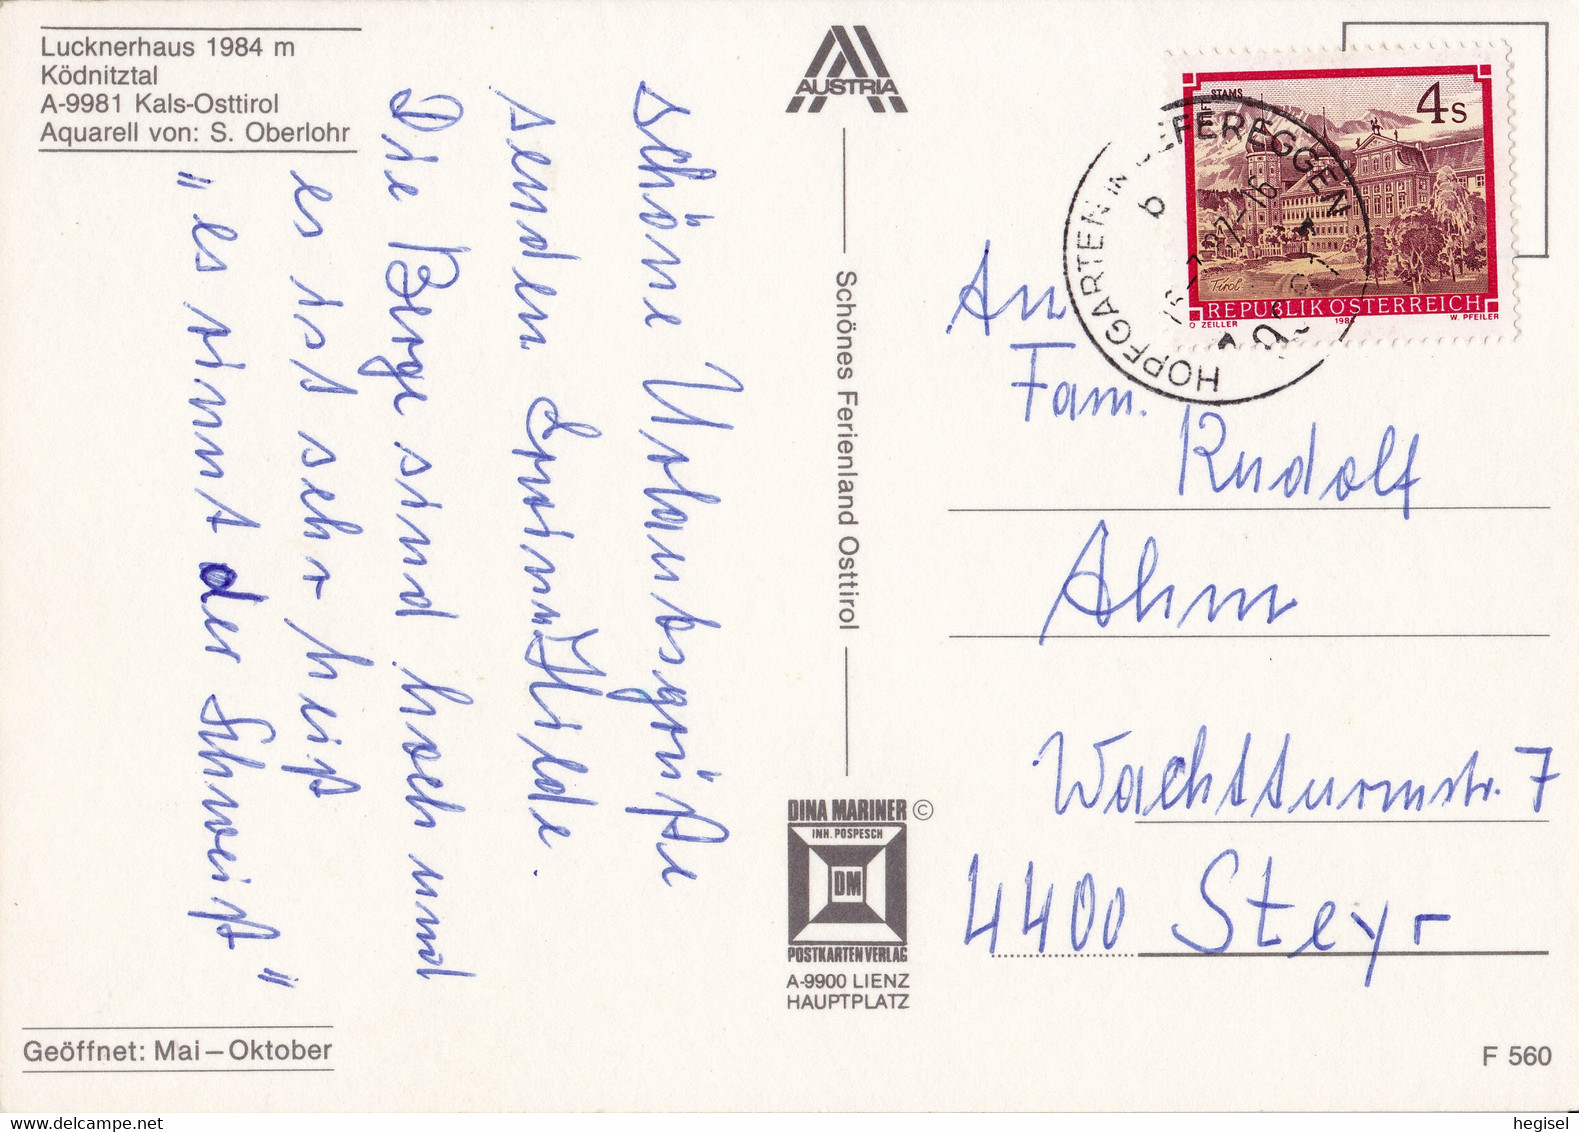 1987, Österreich, Aquarell Von S. Oberlohr, Lucknerhaus, Ködnitztal, Osttirol - Kals